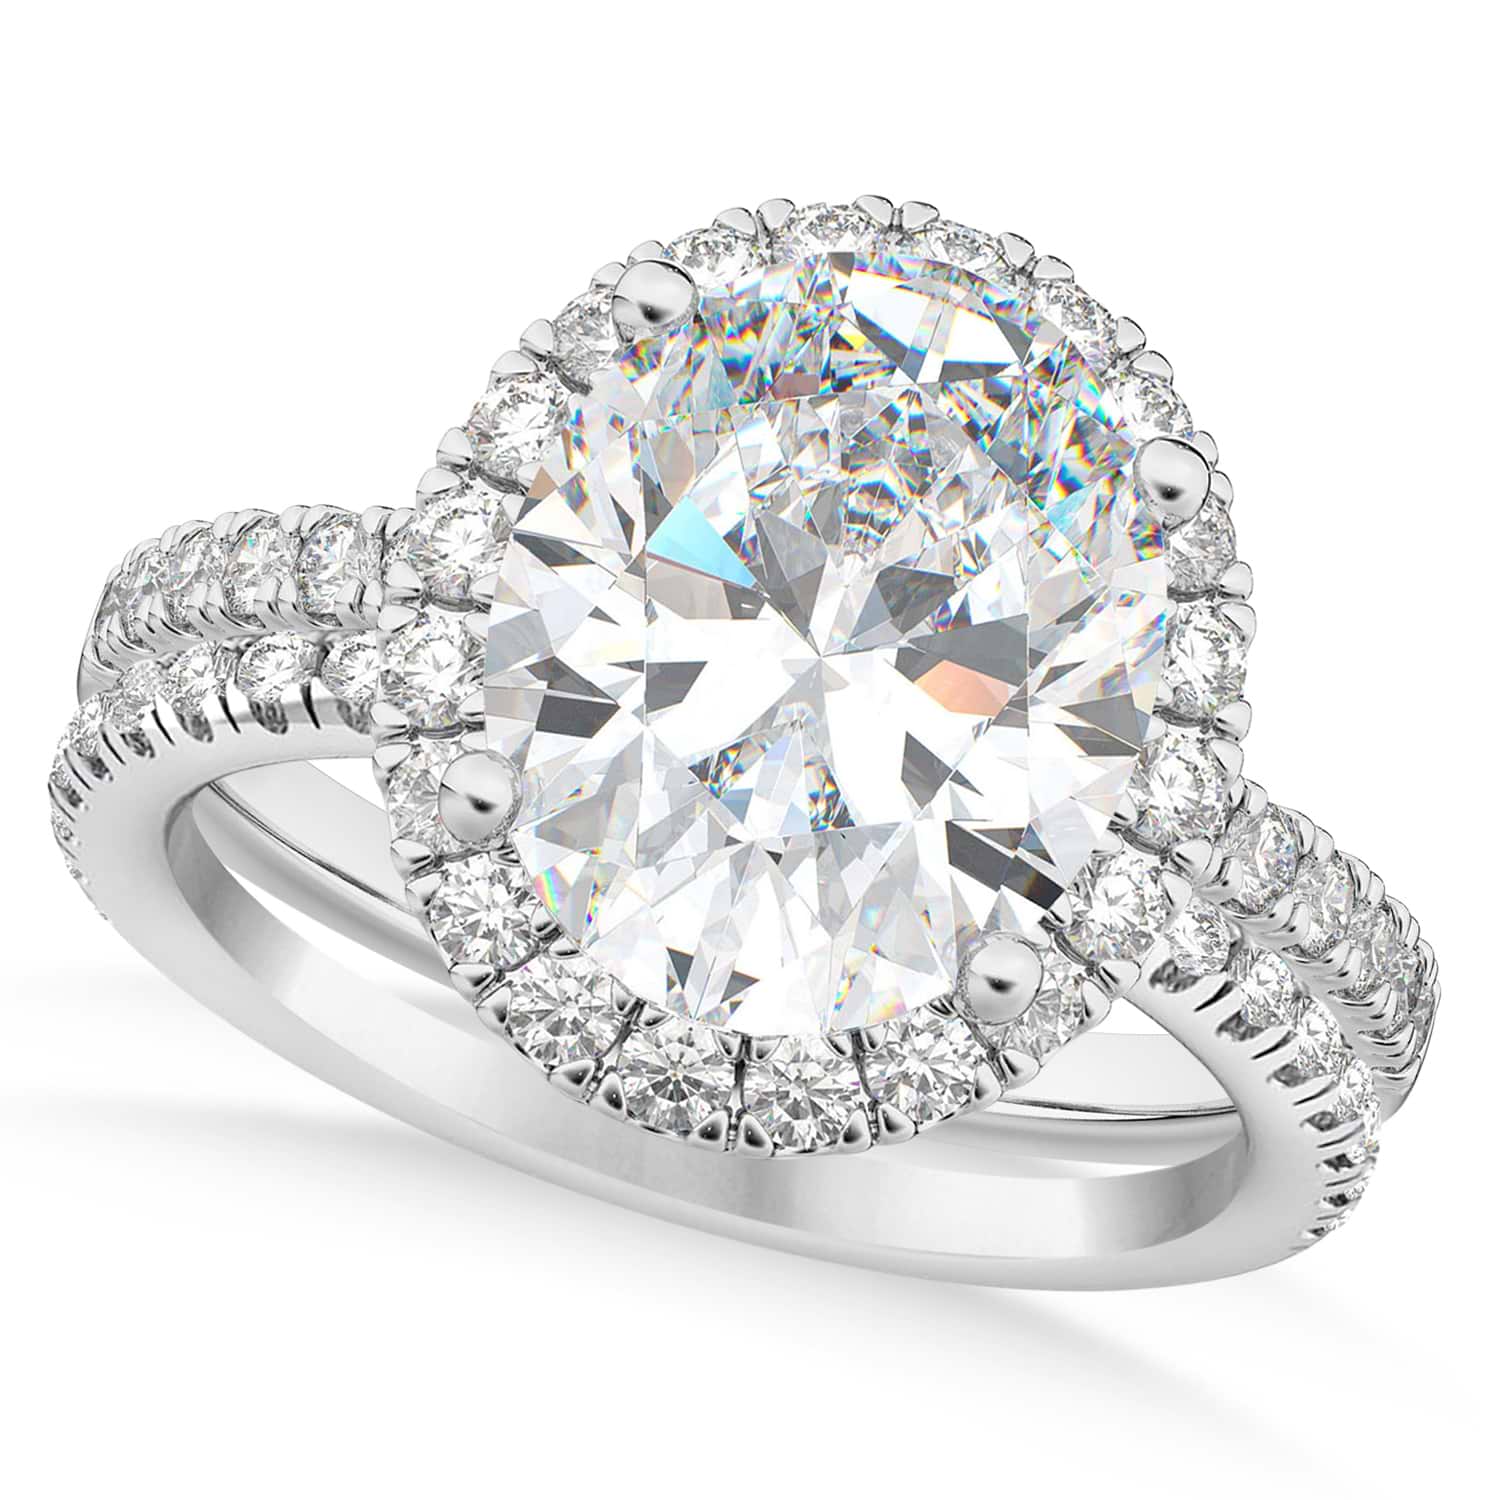 Lab Grown & White Diamonds Oval-Cut Halo Bridal Set 14K White Gold (3.78ct)